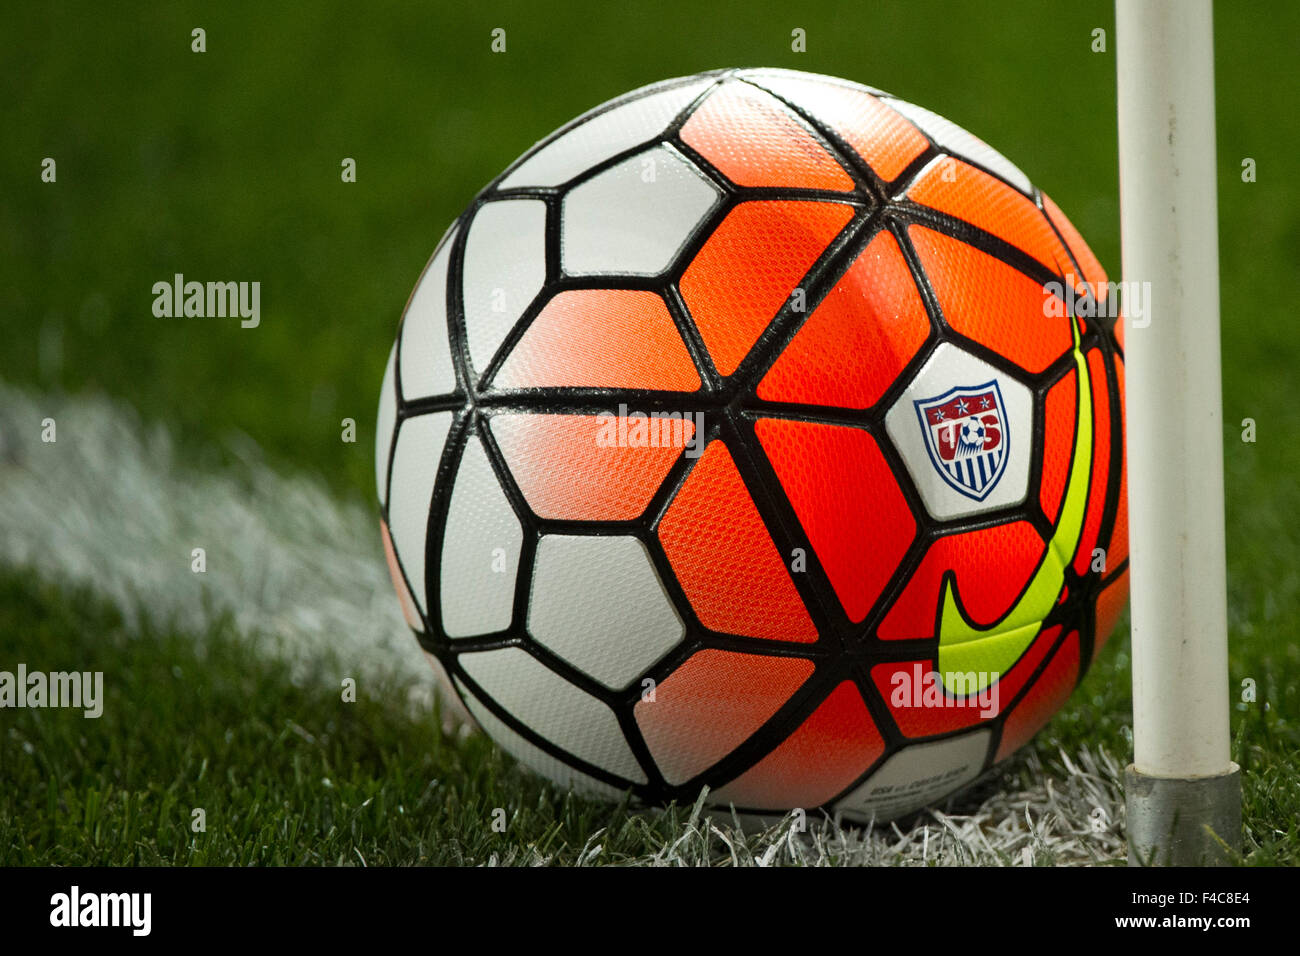 Octubre 13, 2015: Los EE.UU. balón de fútbol con el logo Nike el campo durante los hombres del equipo nacional de vs. Costa Rica equipo masculino nacional- amistoso internacional